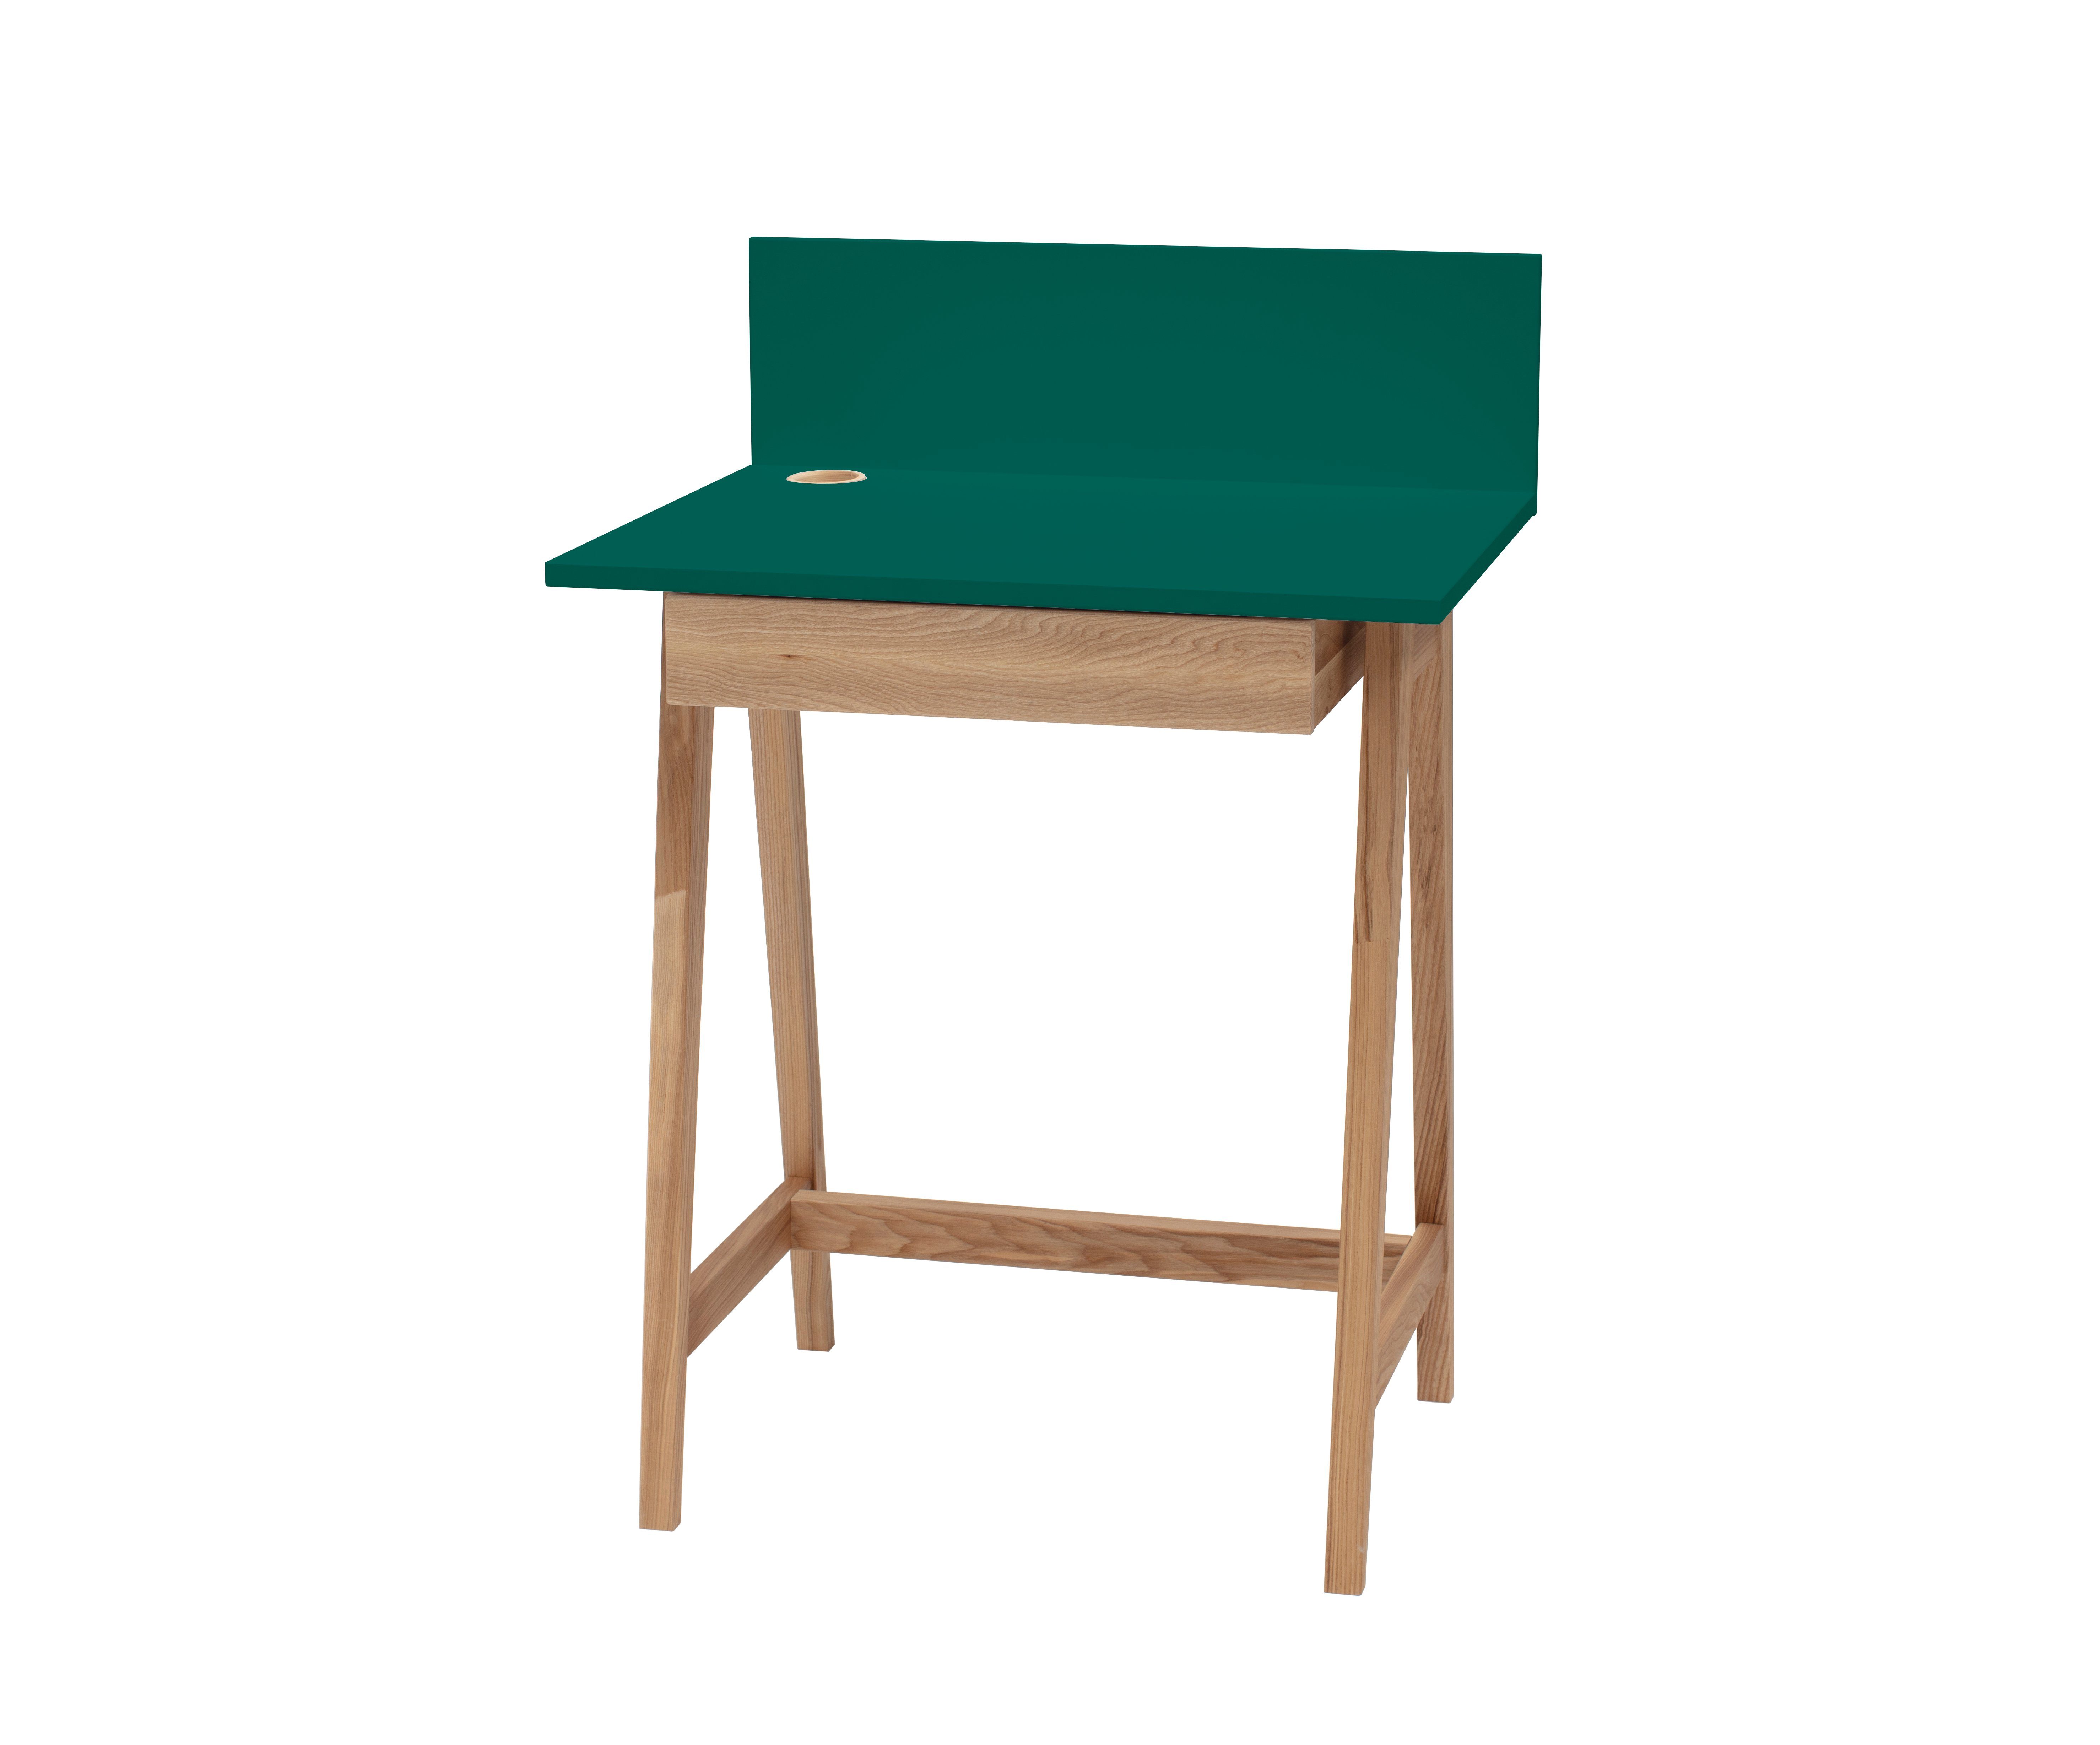 Siblo Schreibtisch Kinderschreibtisch Luke mit Schublade - Bunter Schreibtisch - minimalistisches Design - Kinderzimmer - MDF-Platte - Eschenholz (Kinderschreibtisch Luke mit Schublade) Türkis